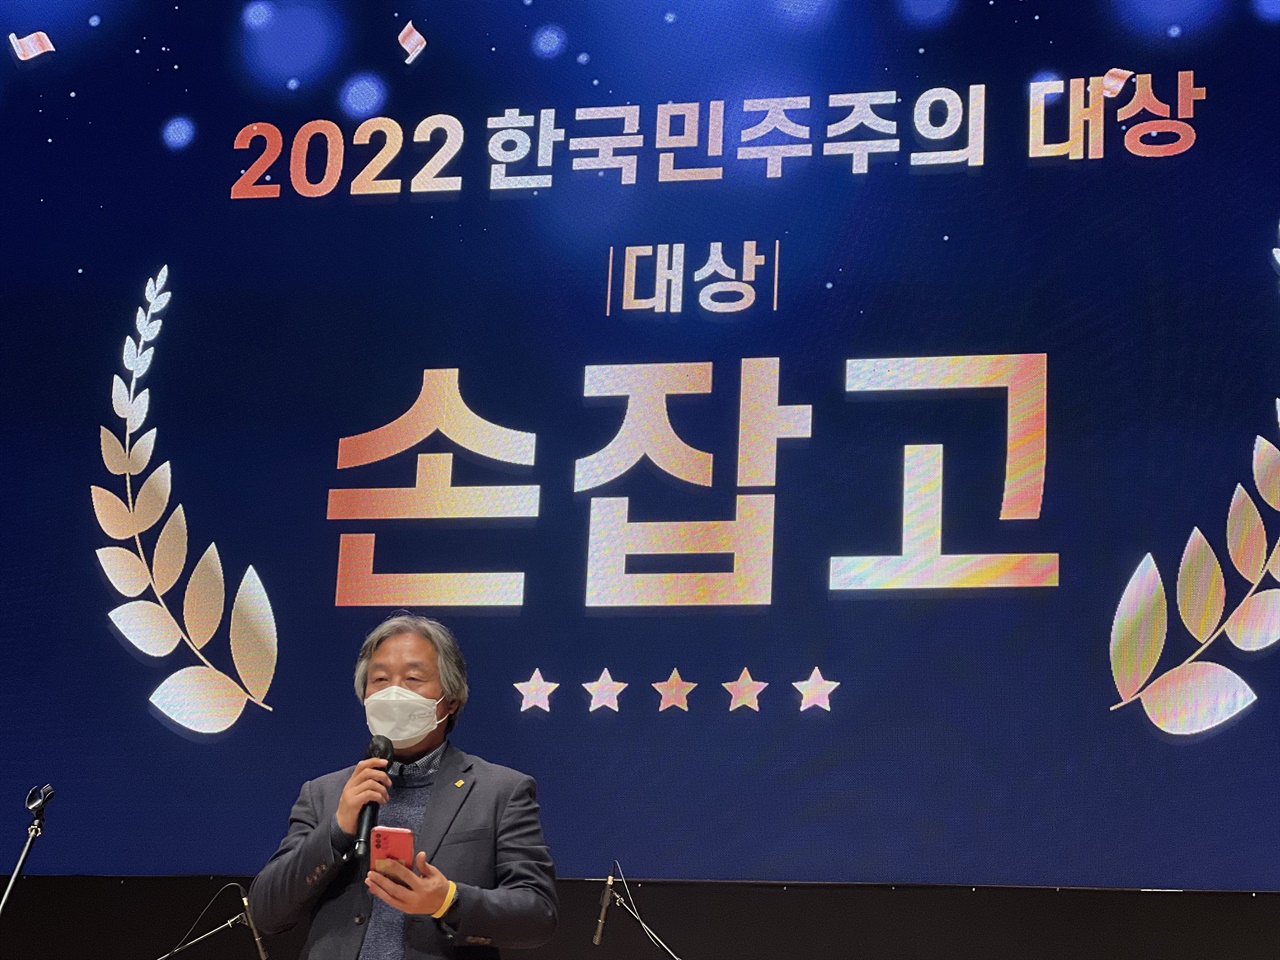 민주화운동기념사업회가 주최한 '2022 한국민주주의대상' 시상식에서 대상을 수상한 ‘손잡고’의 박래군 상임대표가 인사말을 하고 있다.